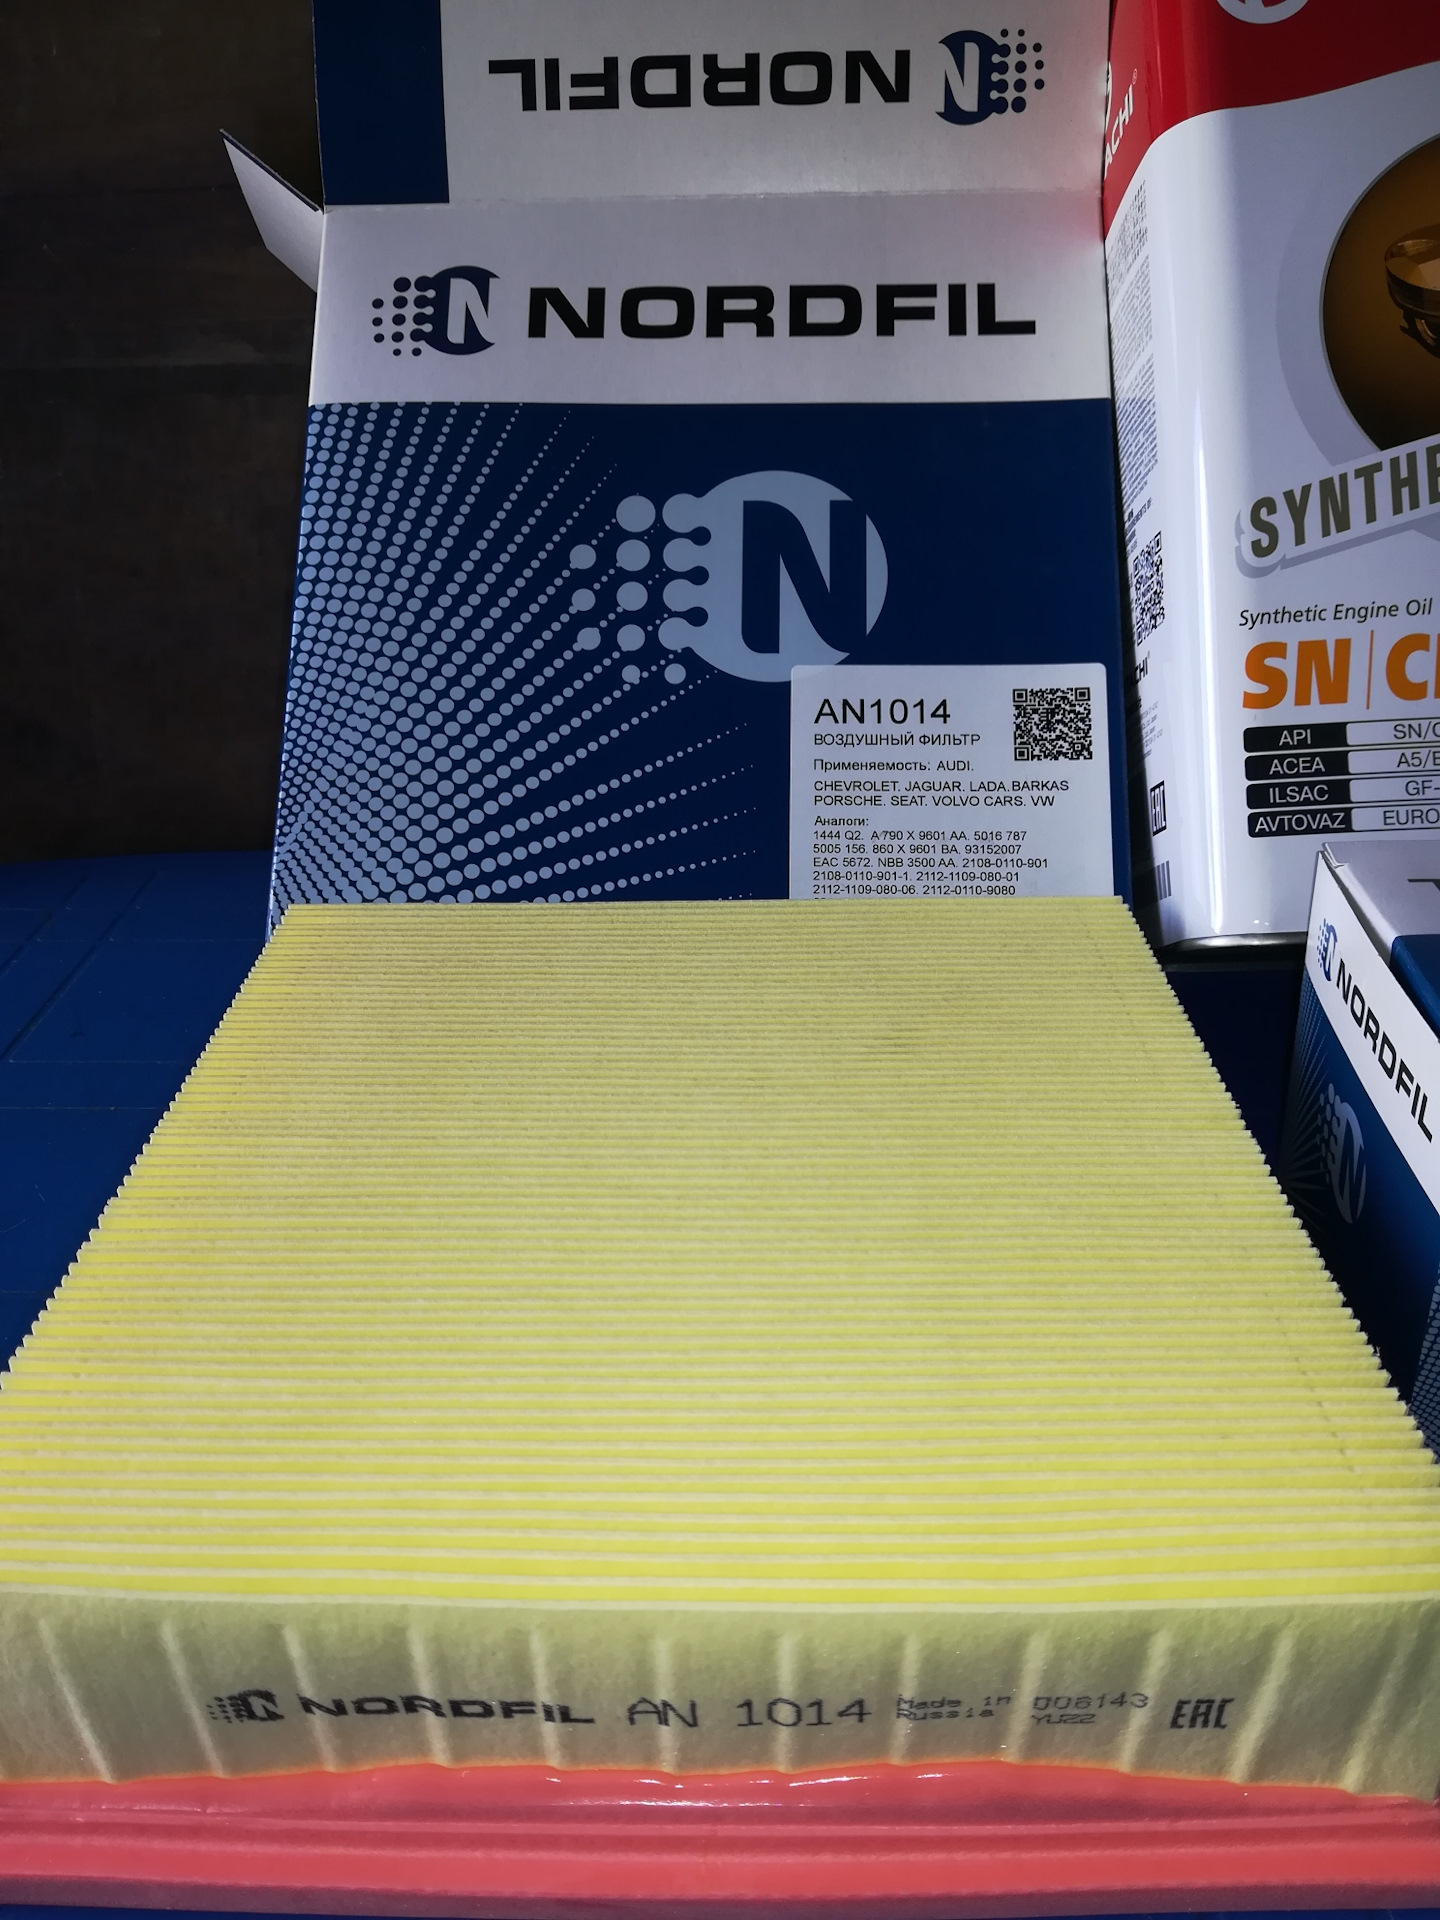 Воздушный фильтр nordfil. NORDFIL an1014. A1014 воздушный фильтр. An1102 NORDFIL. An1015 NORDFIL.